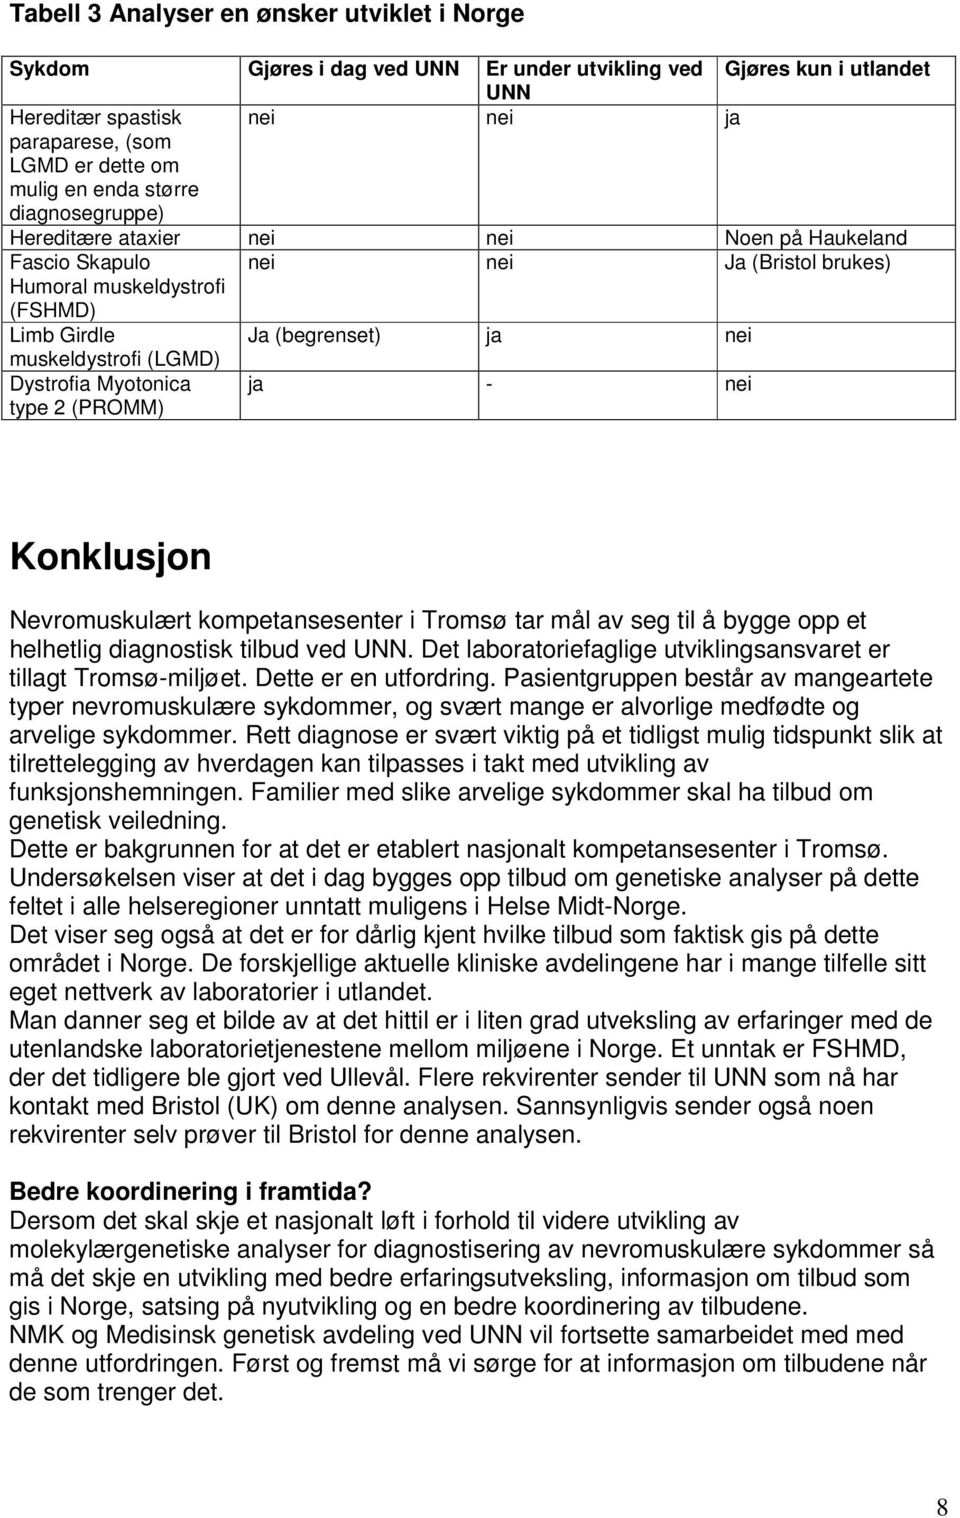 Dystrofia Myotonica type 2 (PROMM) ja - nei Konklusjon Nevromuskulært kompetansesenter i Tromsø tar mål av seg til å bygge opp et helhetlig diagnostisk tilbud ved UNN.